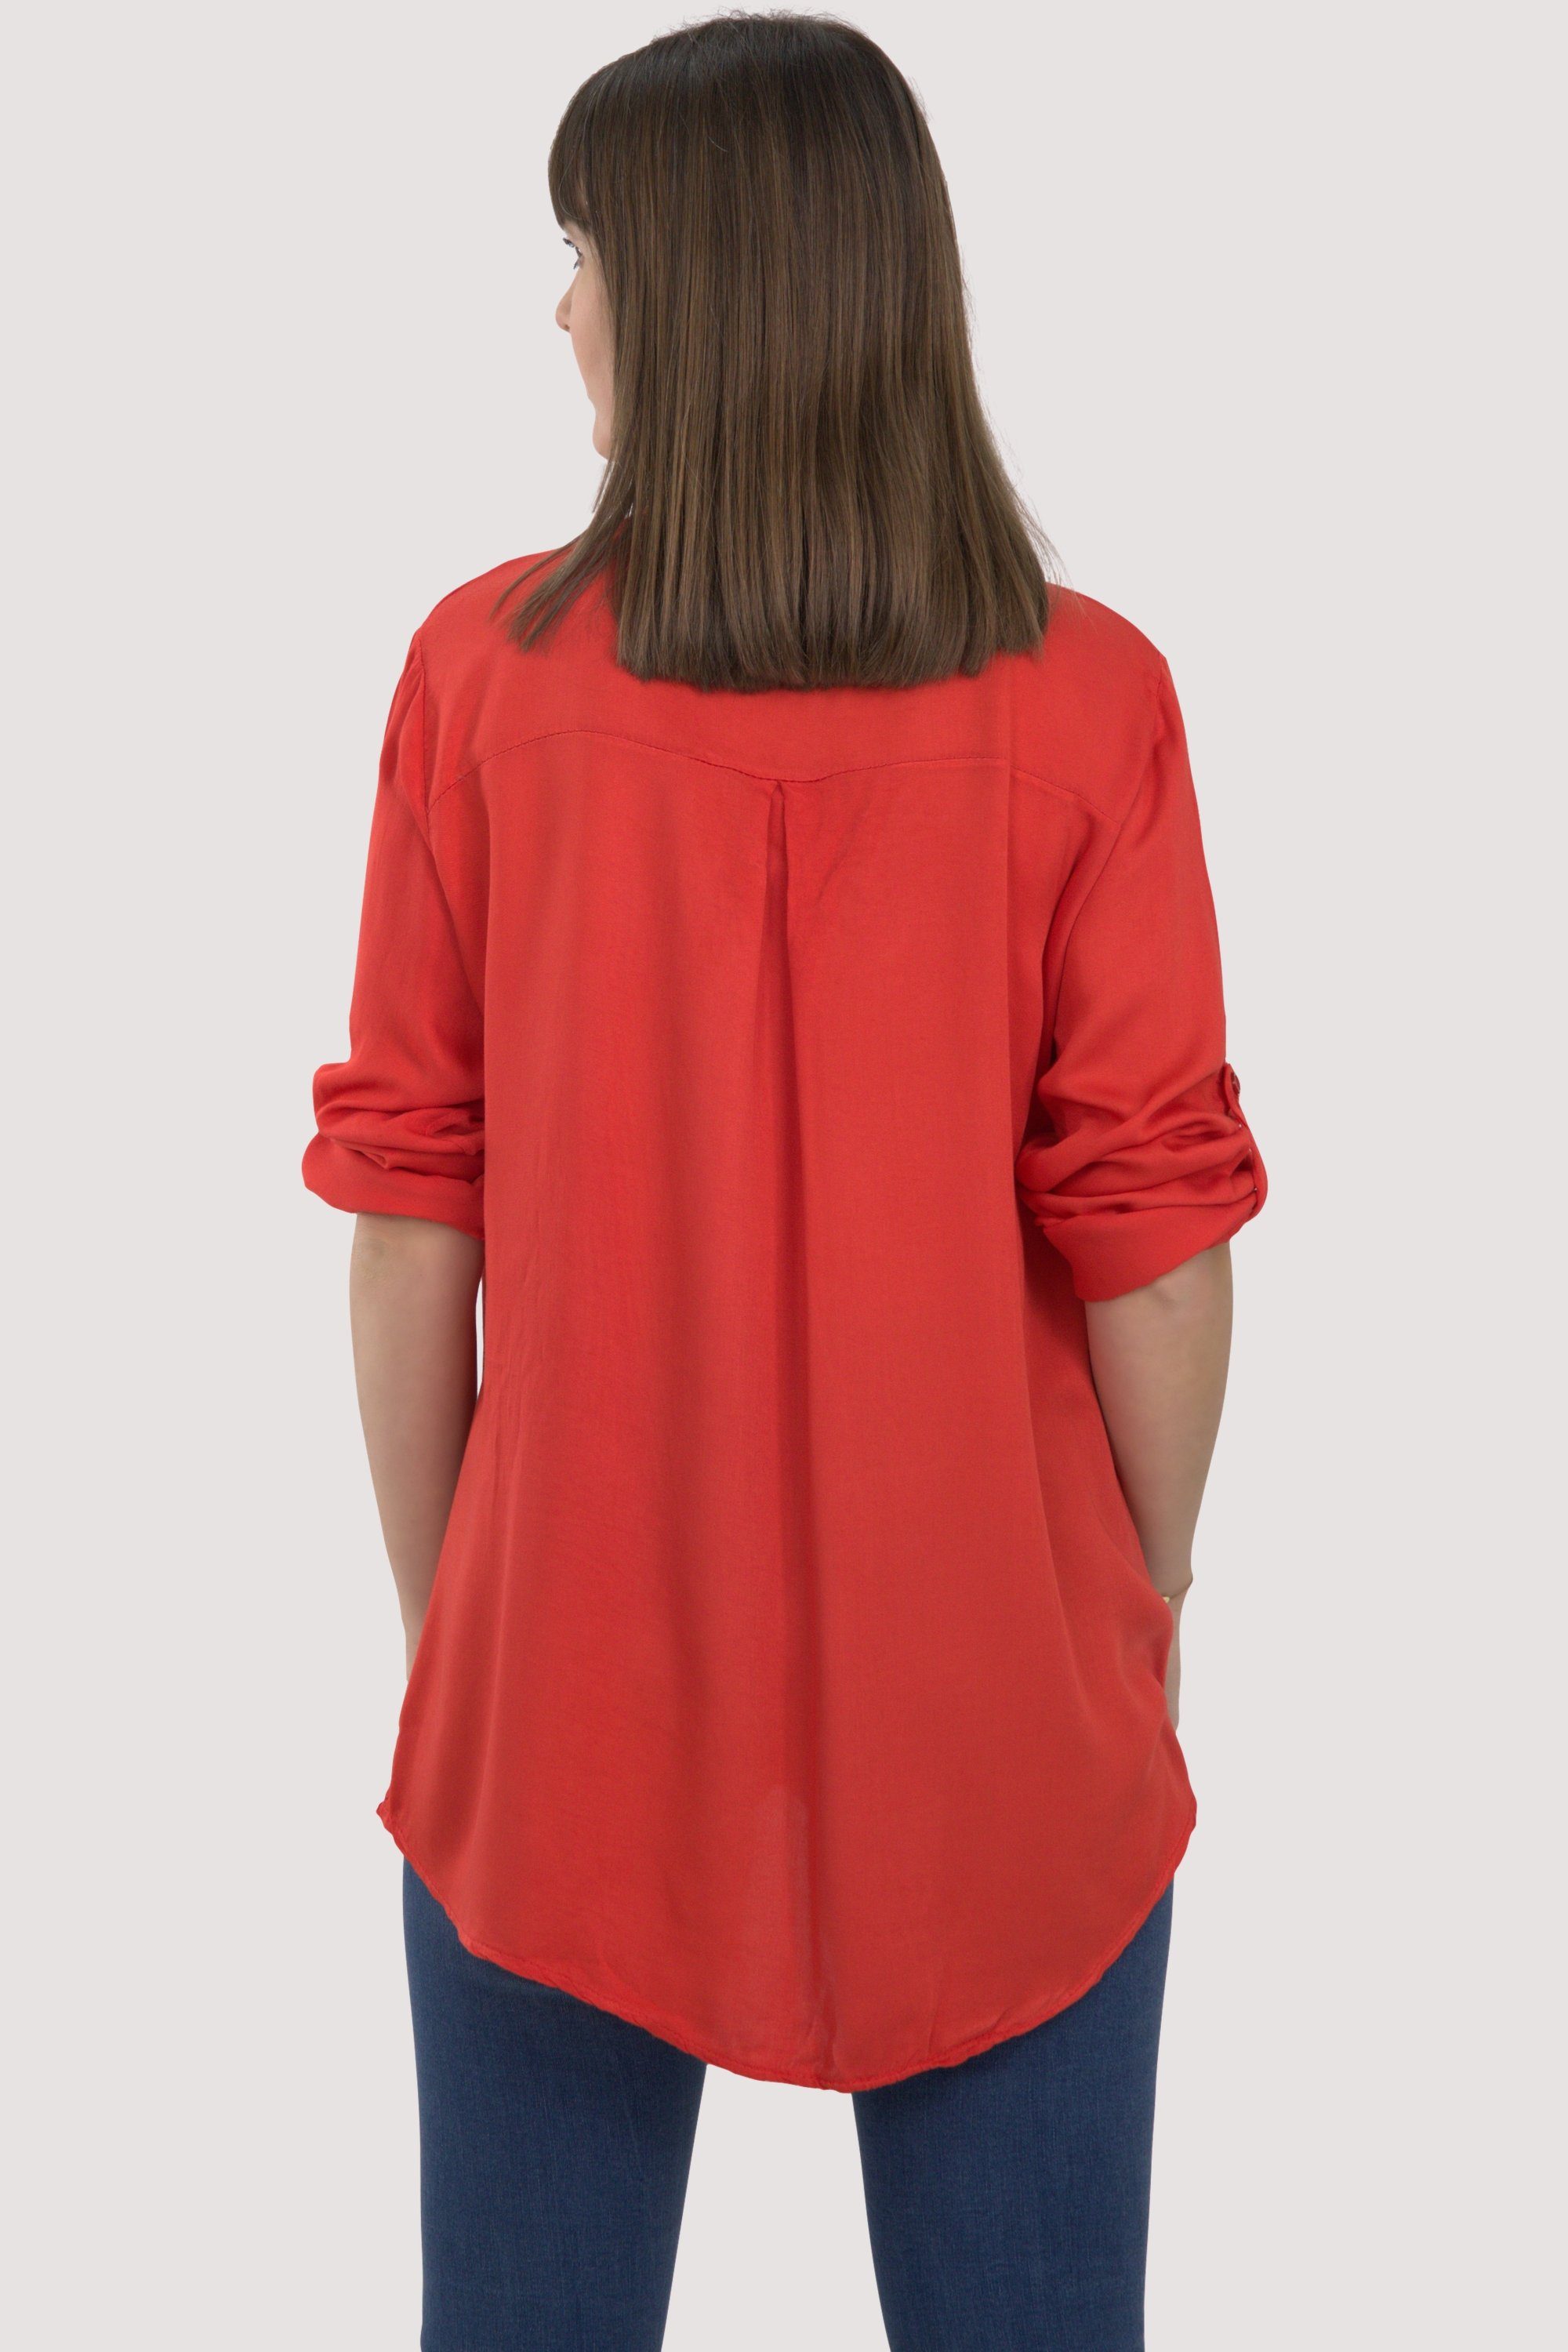 fashion than mit 9015 Ärmeln Schlupfbluse more 3/4 krempelbaren Einheitsgröße malito rot Bluse